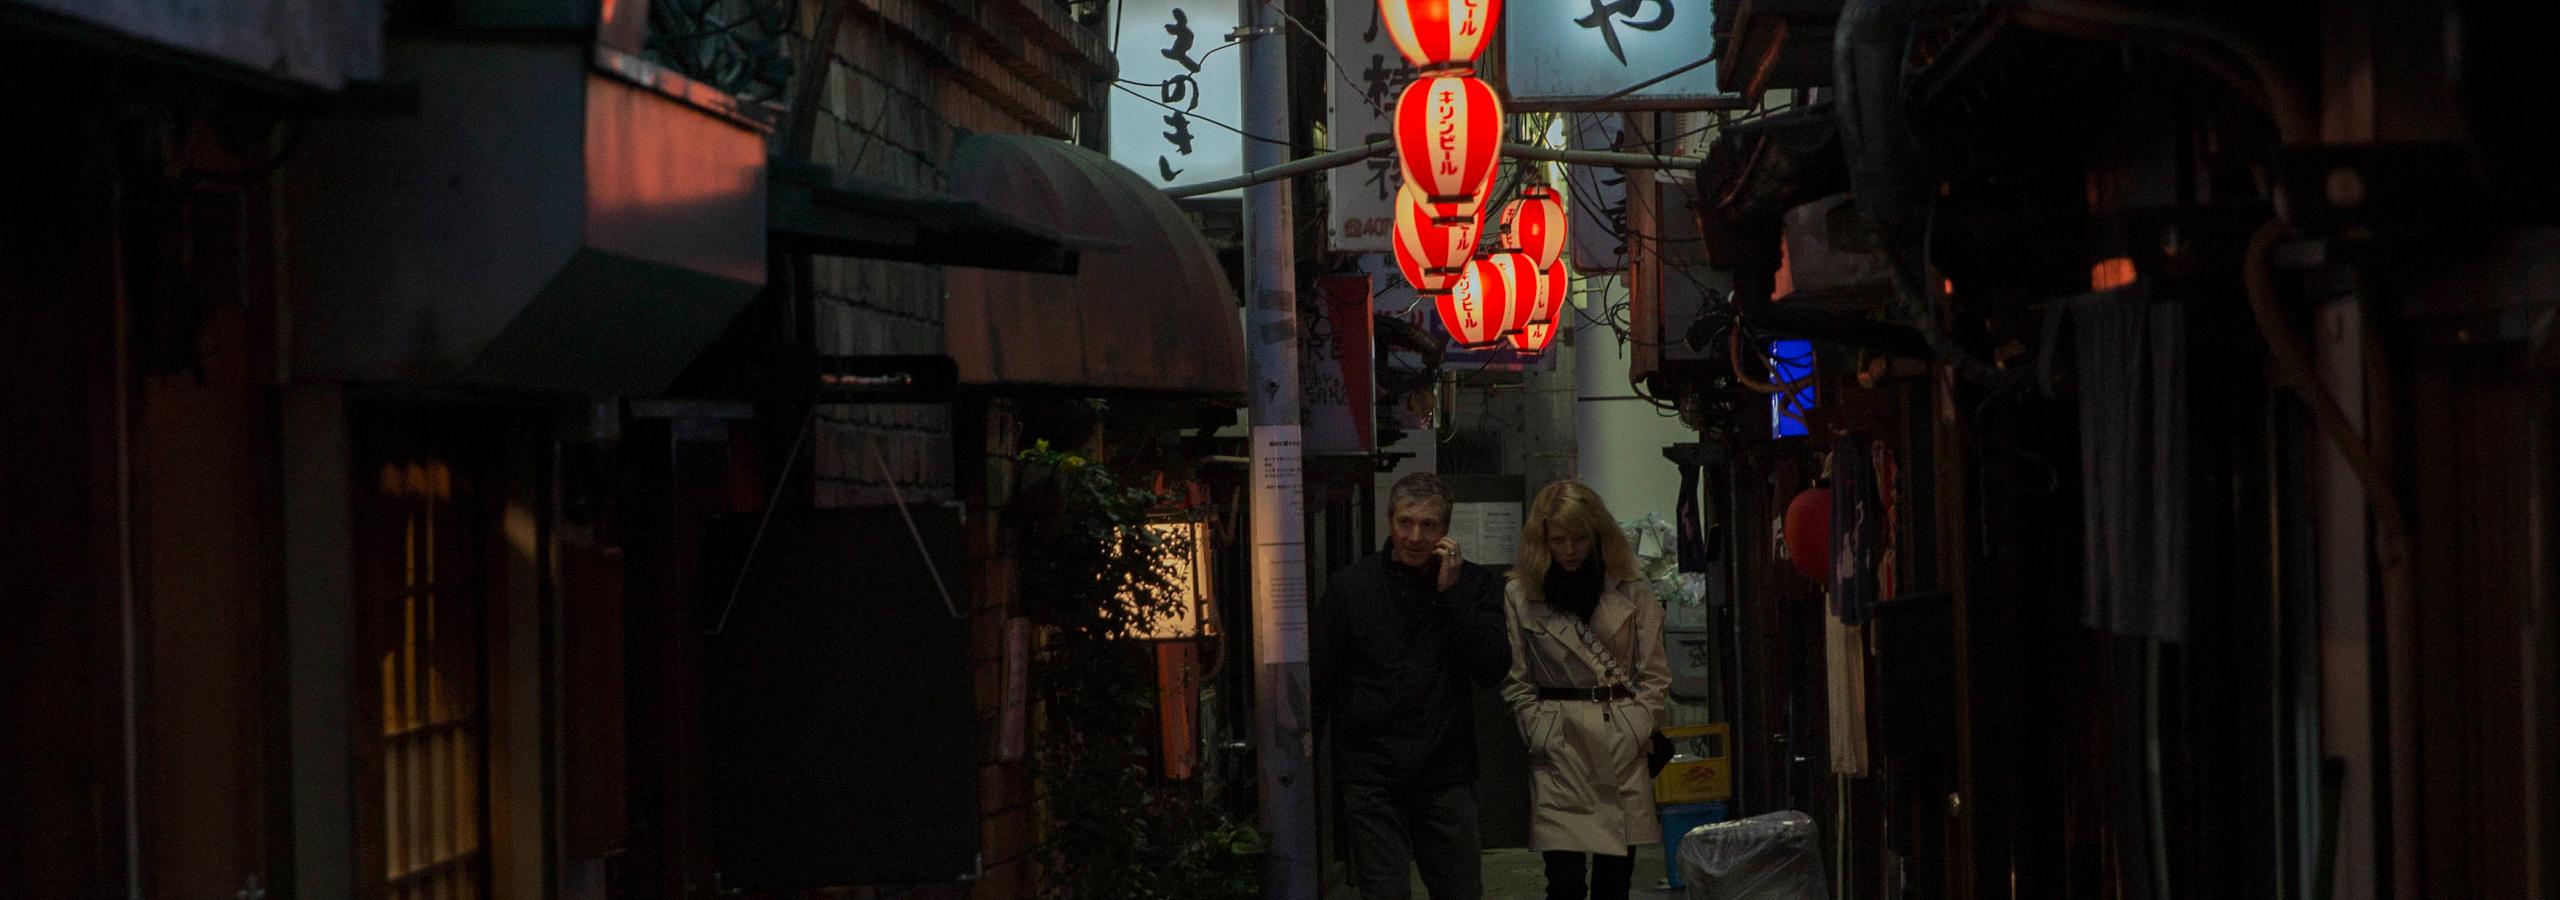 Couple walking through alleyways of Tokyo at night